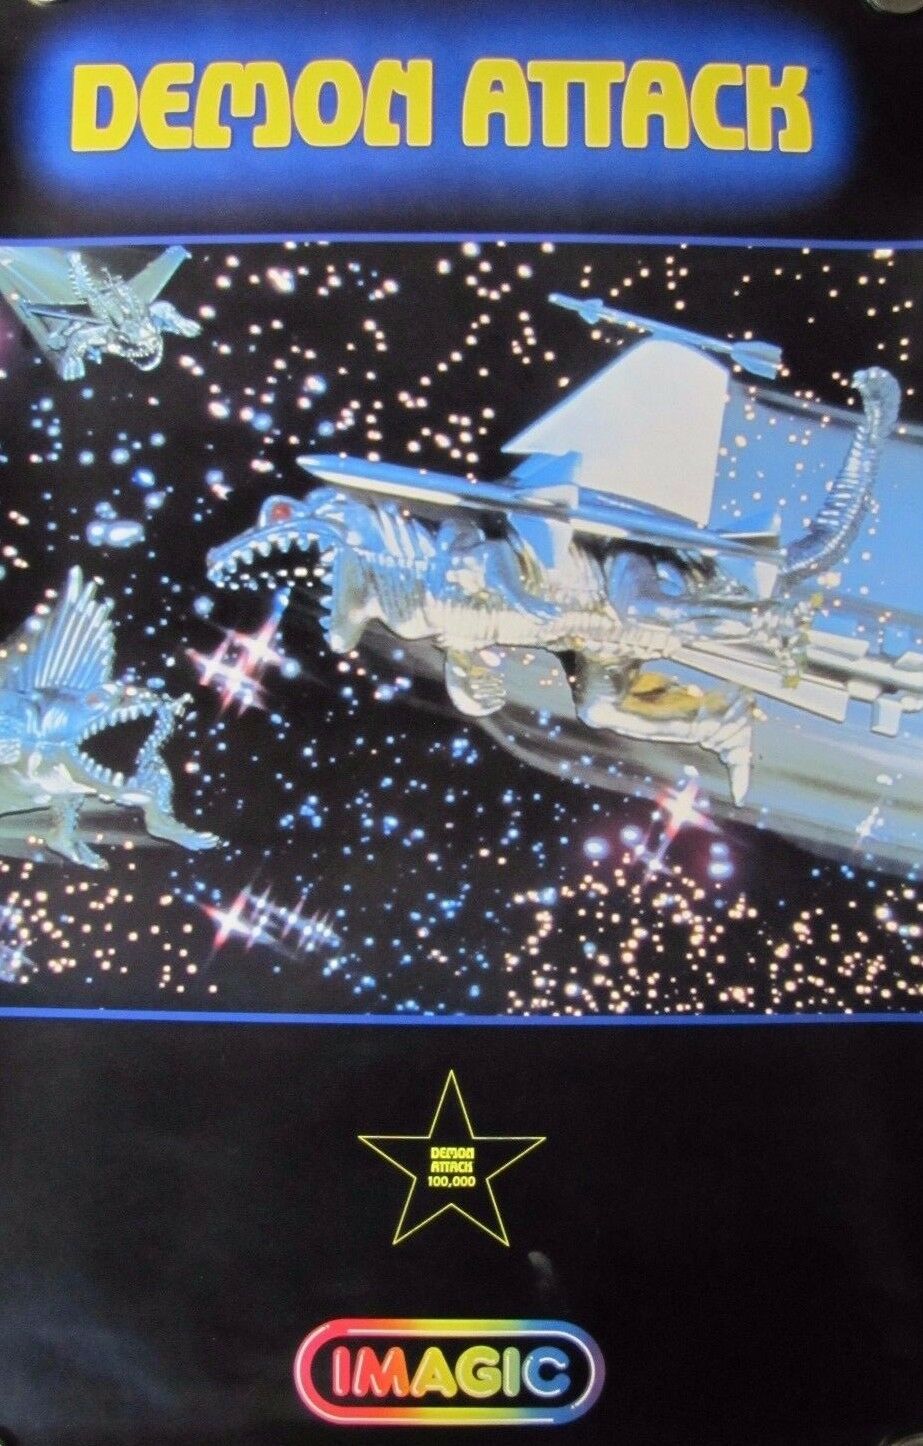 Original 1982 DEMON ATTACK Video Game Promo Poster IMAGIC Atari 2600 printed USA